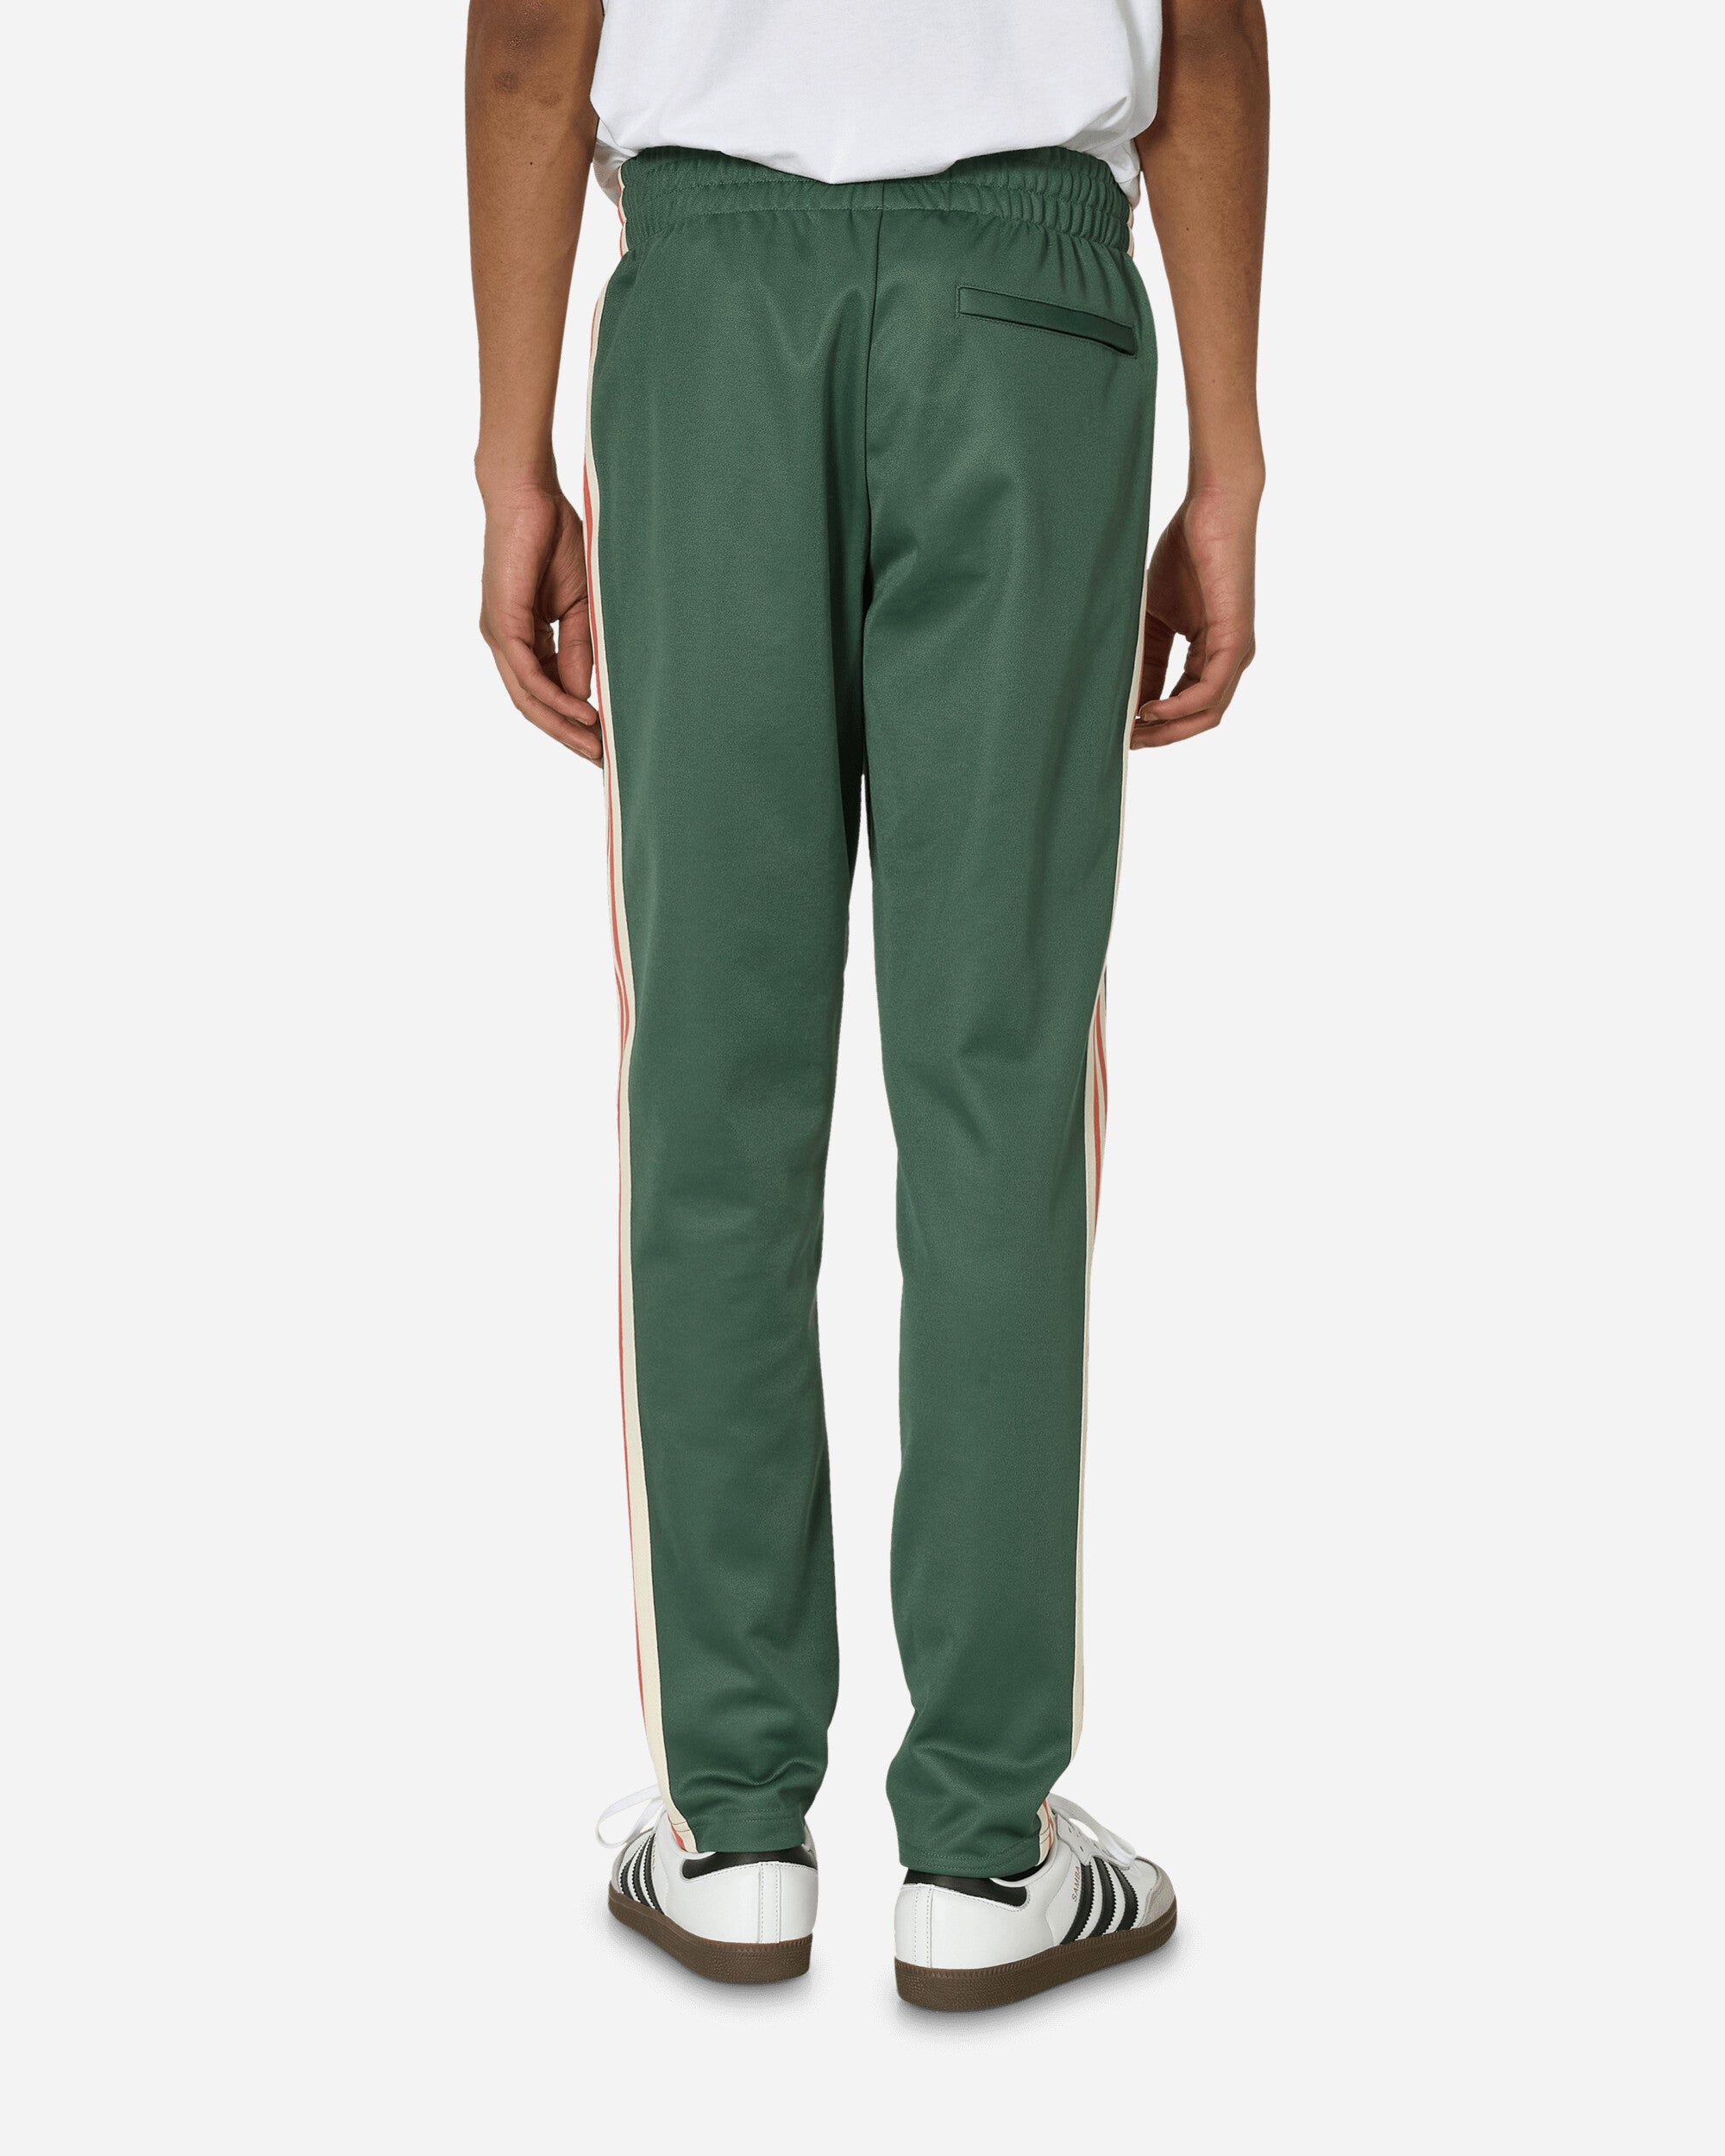 adidas Fmf Og Bb Tp Green Oxide Pants Track Pants IU2174 001